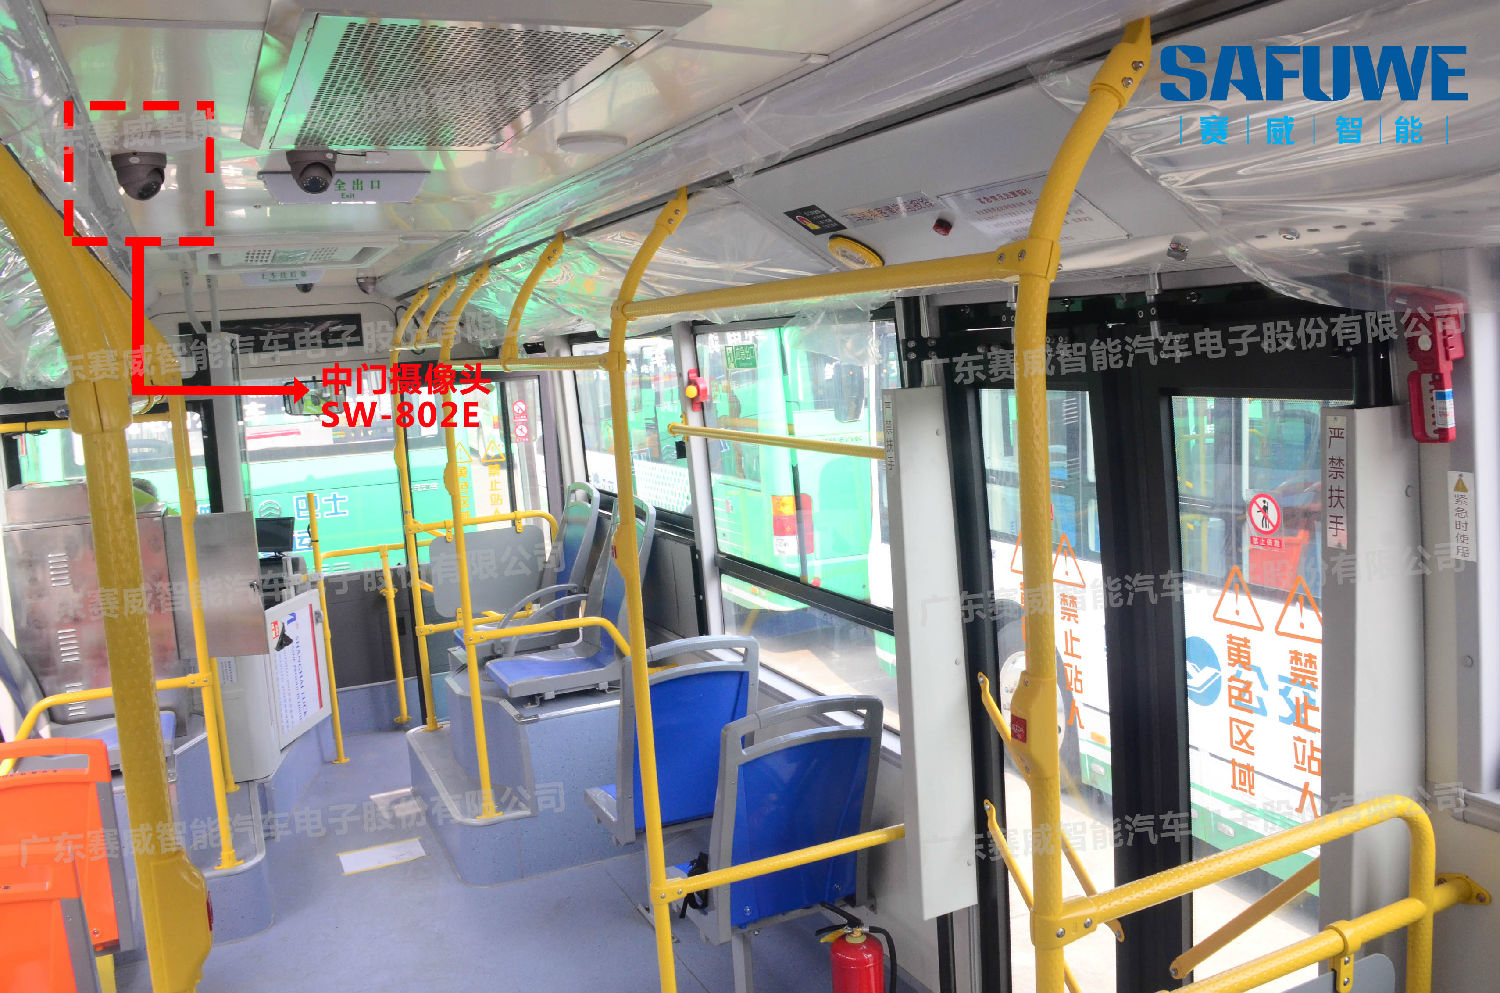 赛威公交中门摄像头,辅助司机监控乘客下车情况